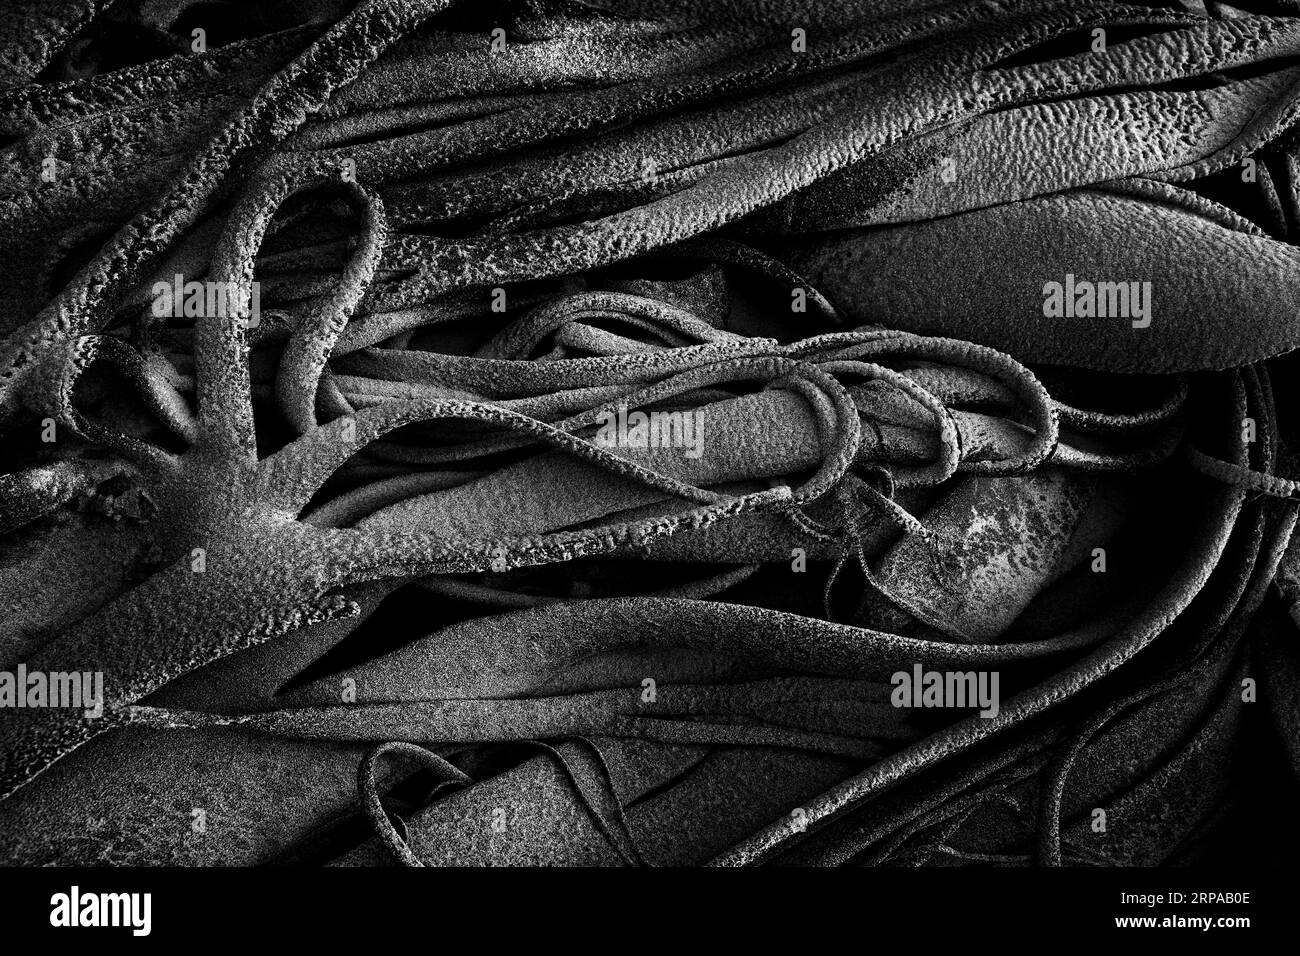 Hintergrund: Seetang, der sich in tiefem Schwarz-weiß windet. Stockfoto